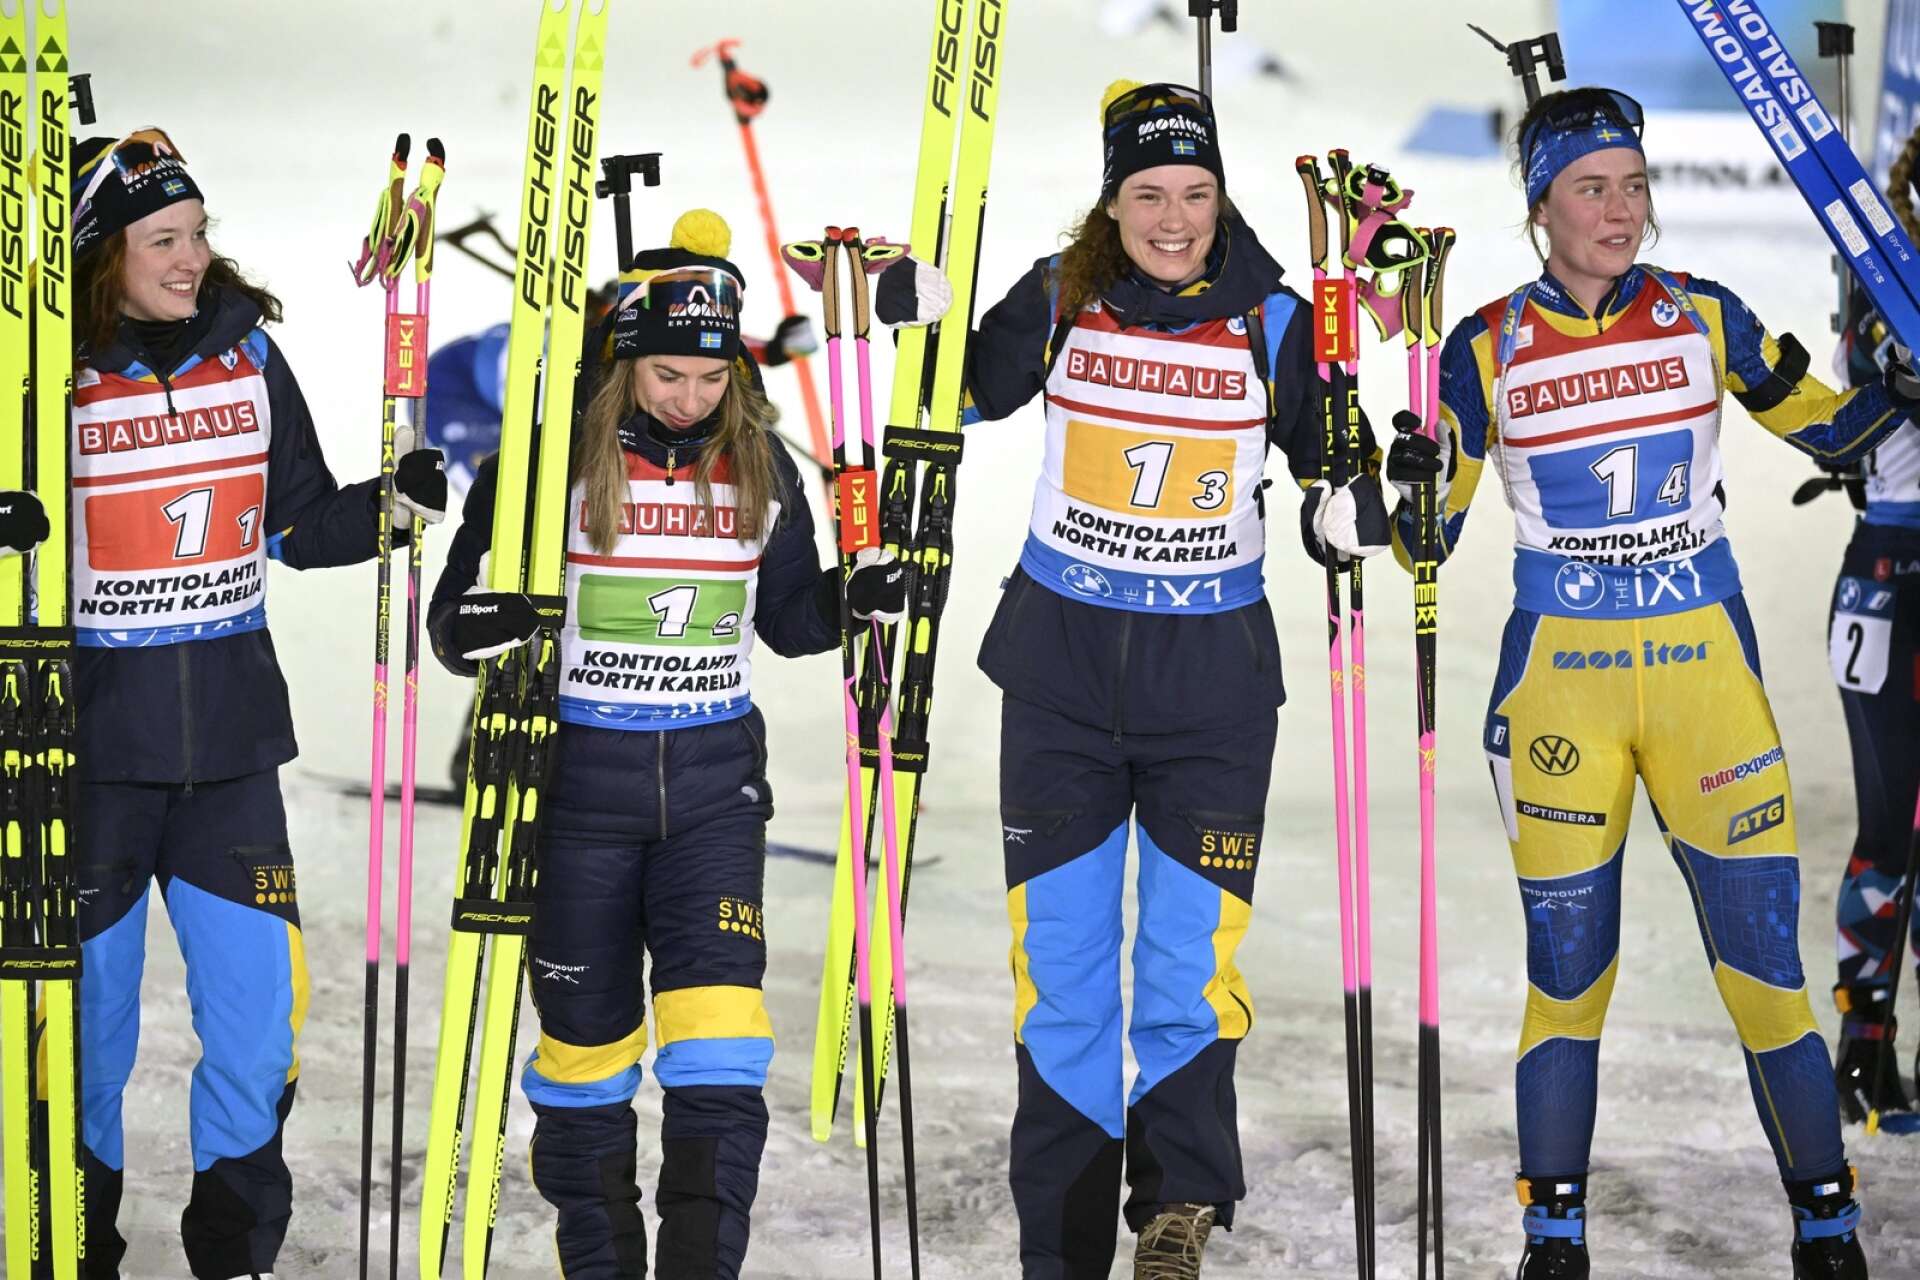 För ett år sedan vann Linn Persson, Anna Magnusson, Hanna Öberg och Elvira Öberg stafetten i världscuppremiären i Finland. På onsdagen åker samma kvartett igen, fast i en annan ordning.